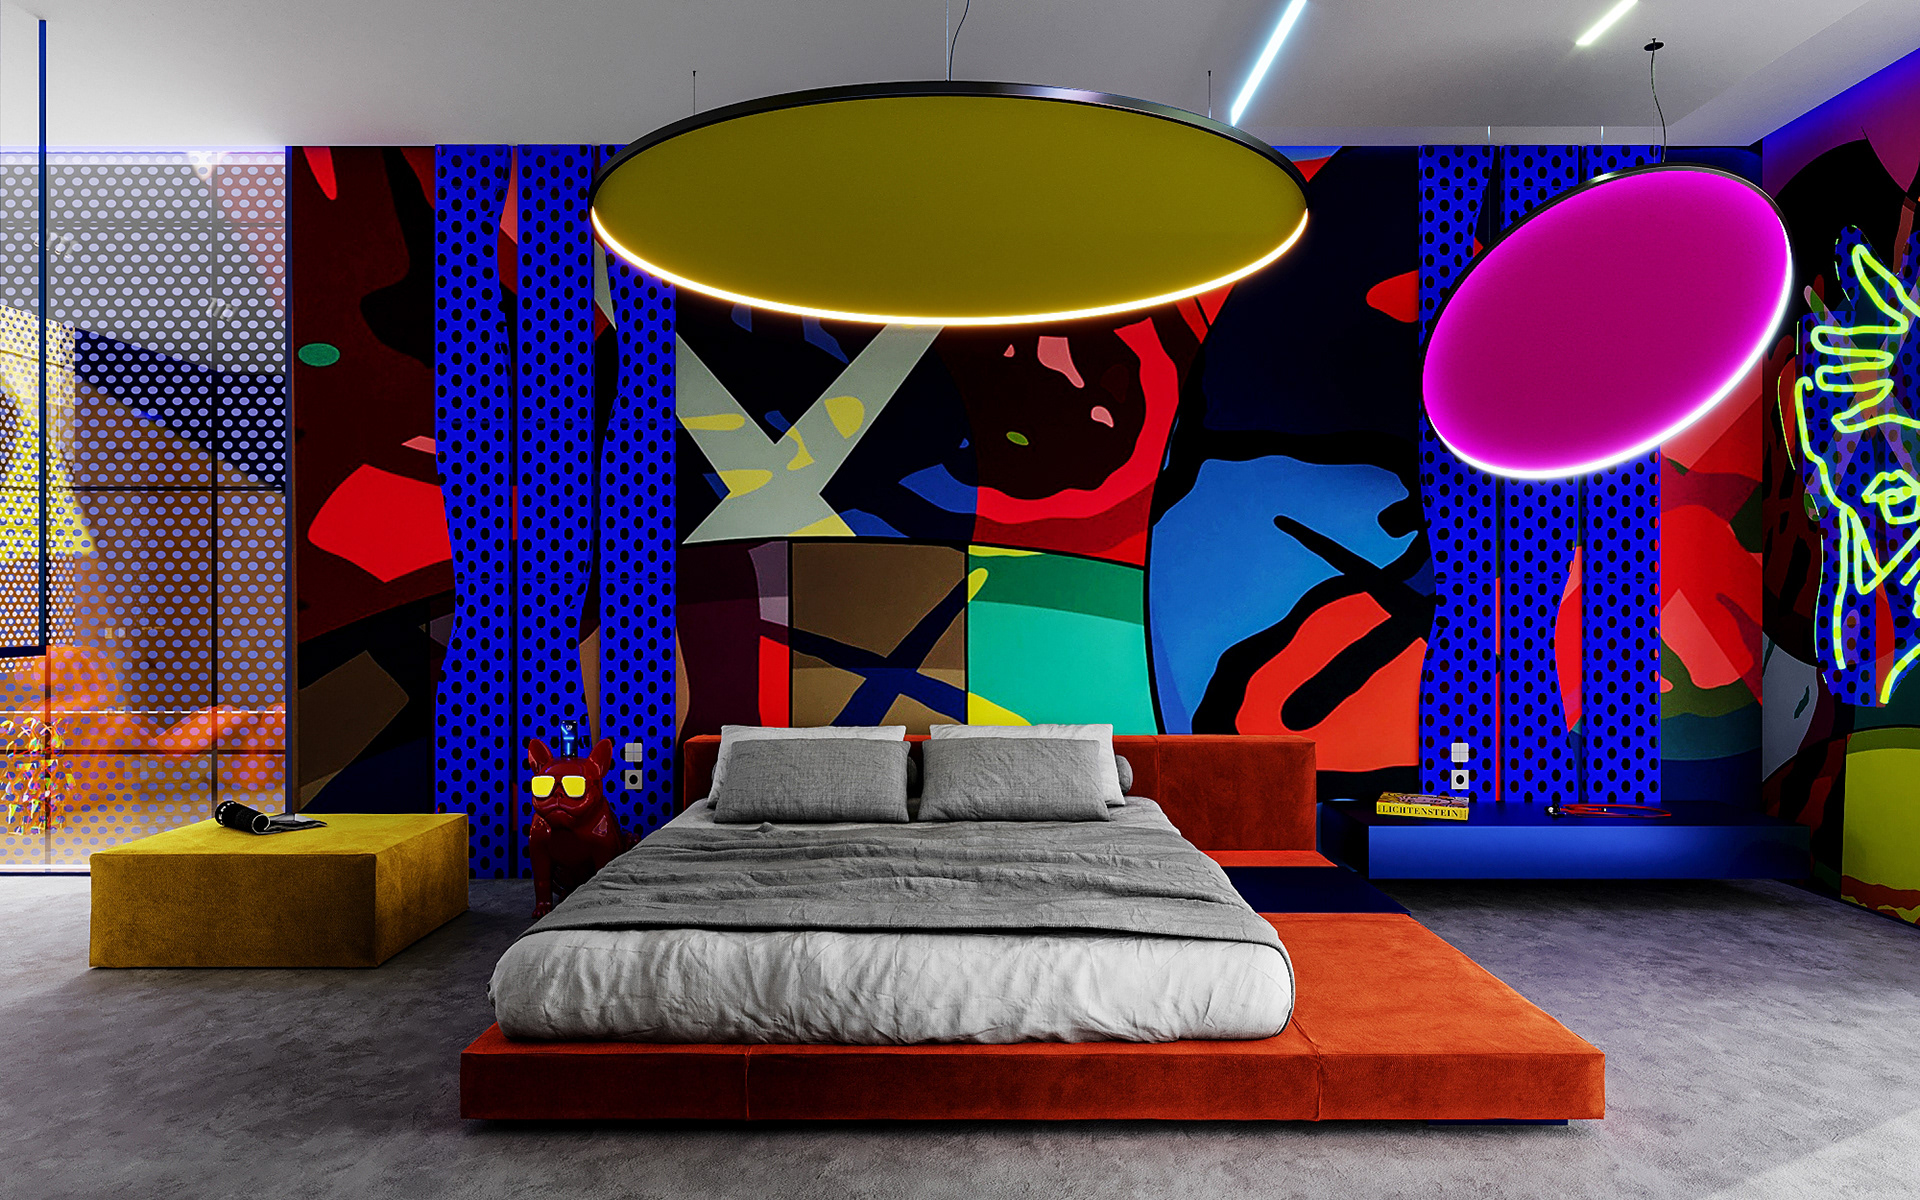 Ánh sáng trong phòng ngủ phong cách Pop Art sử dụng ánh sáng theo nguyên tắc ngẫu hứng và chuyển đổi đa dạng | Nguồn: Internet.